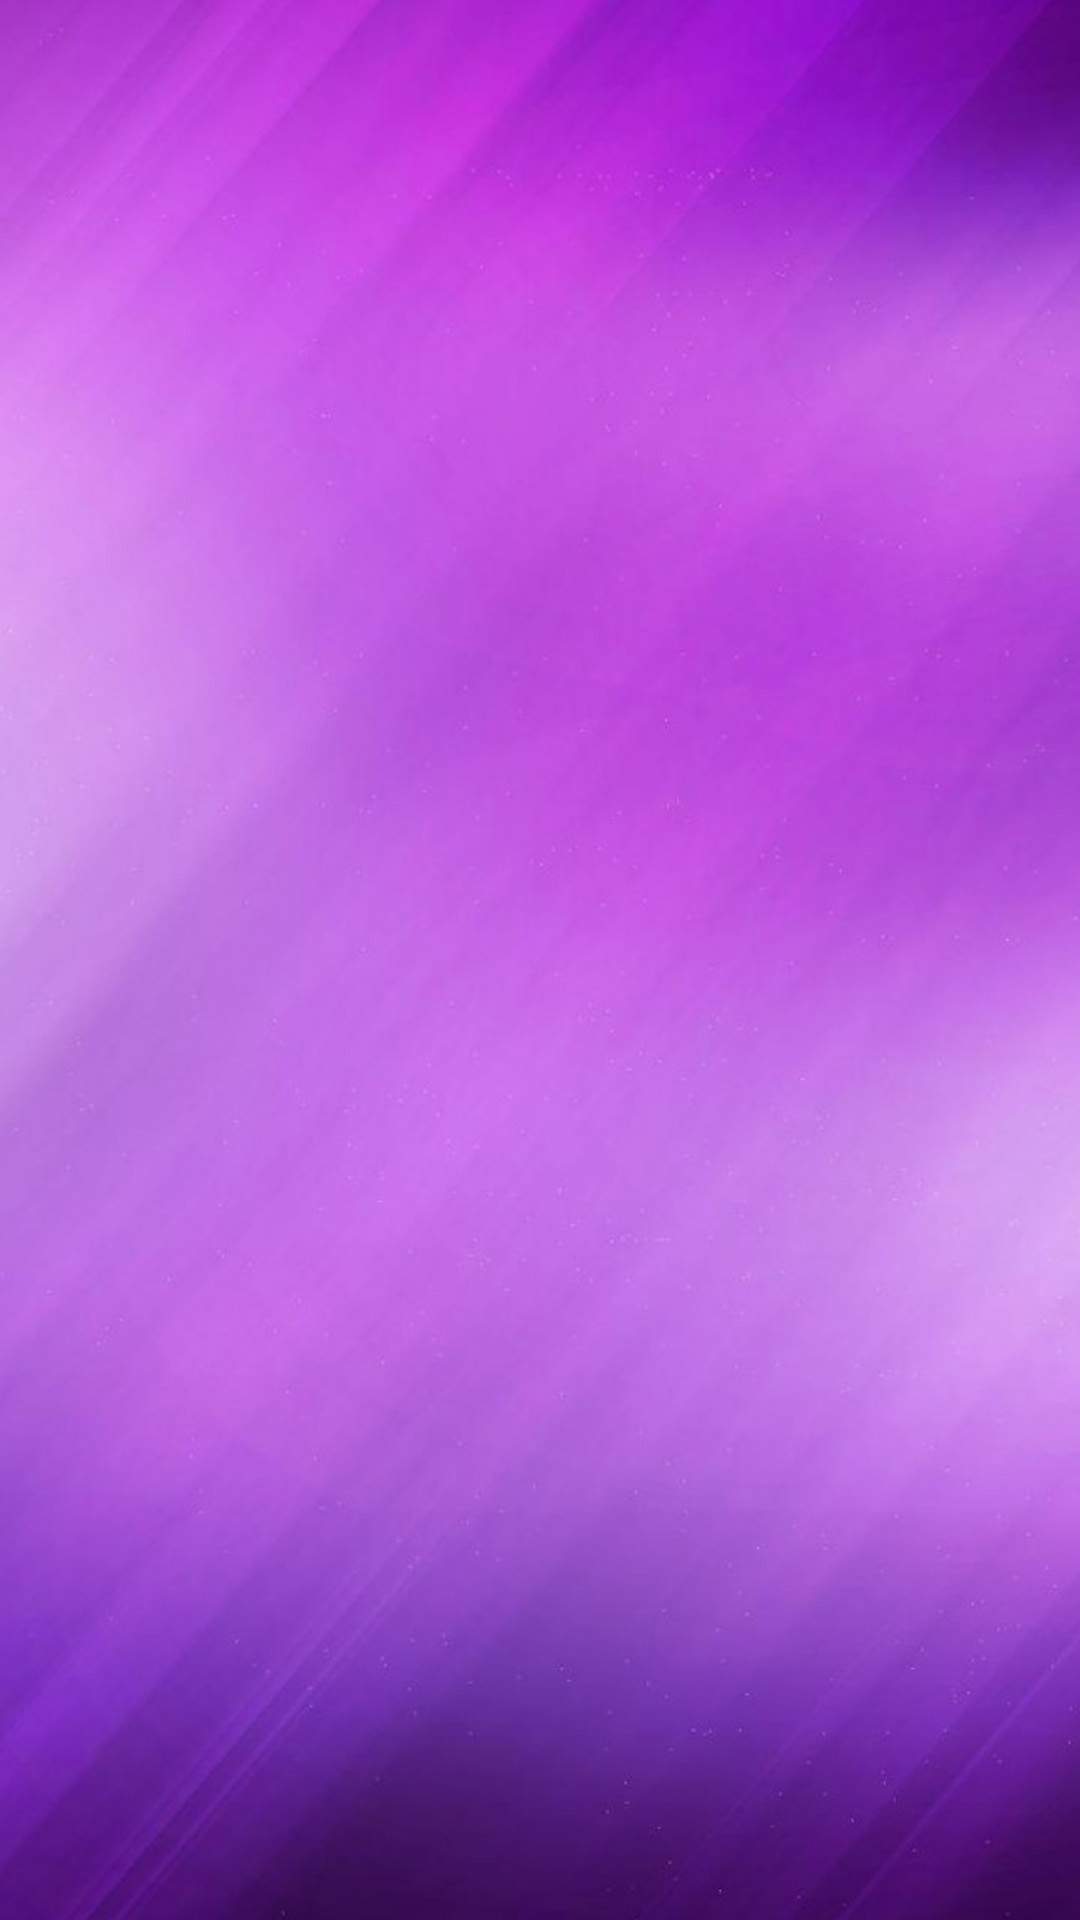 Simple Purple Nexus 5 Wallpapers, Nexus 5 wallpapers and Backgrounds